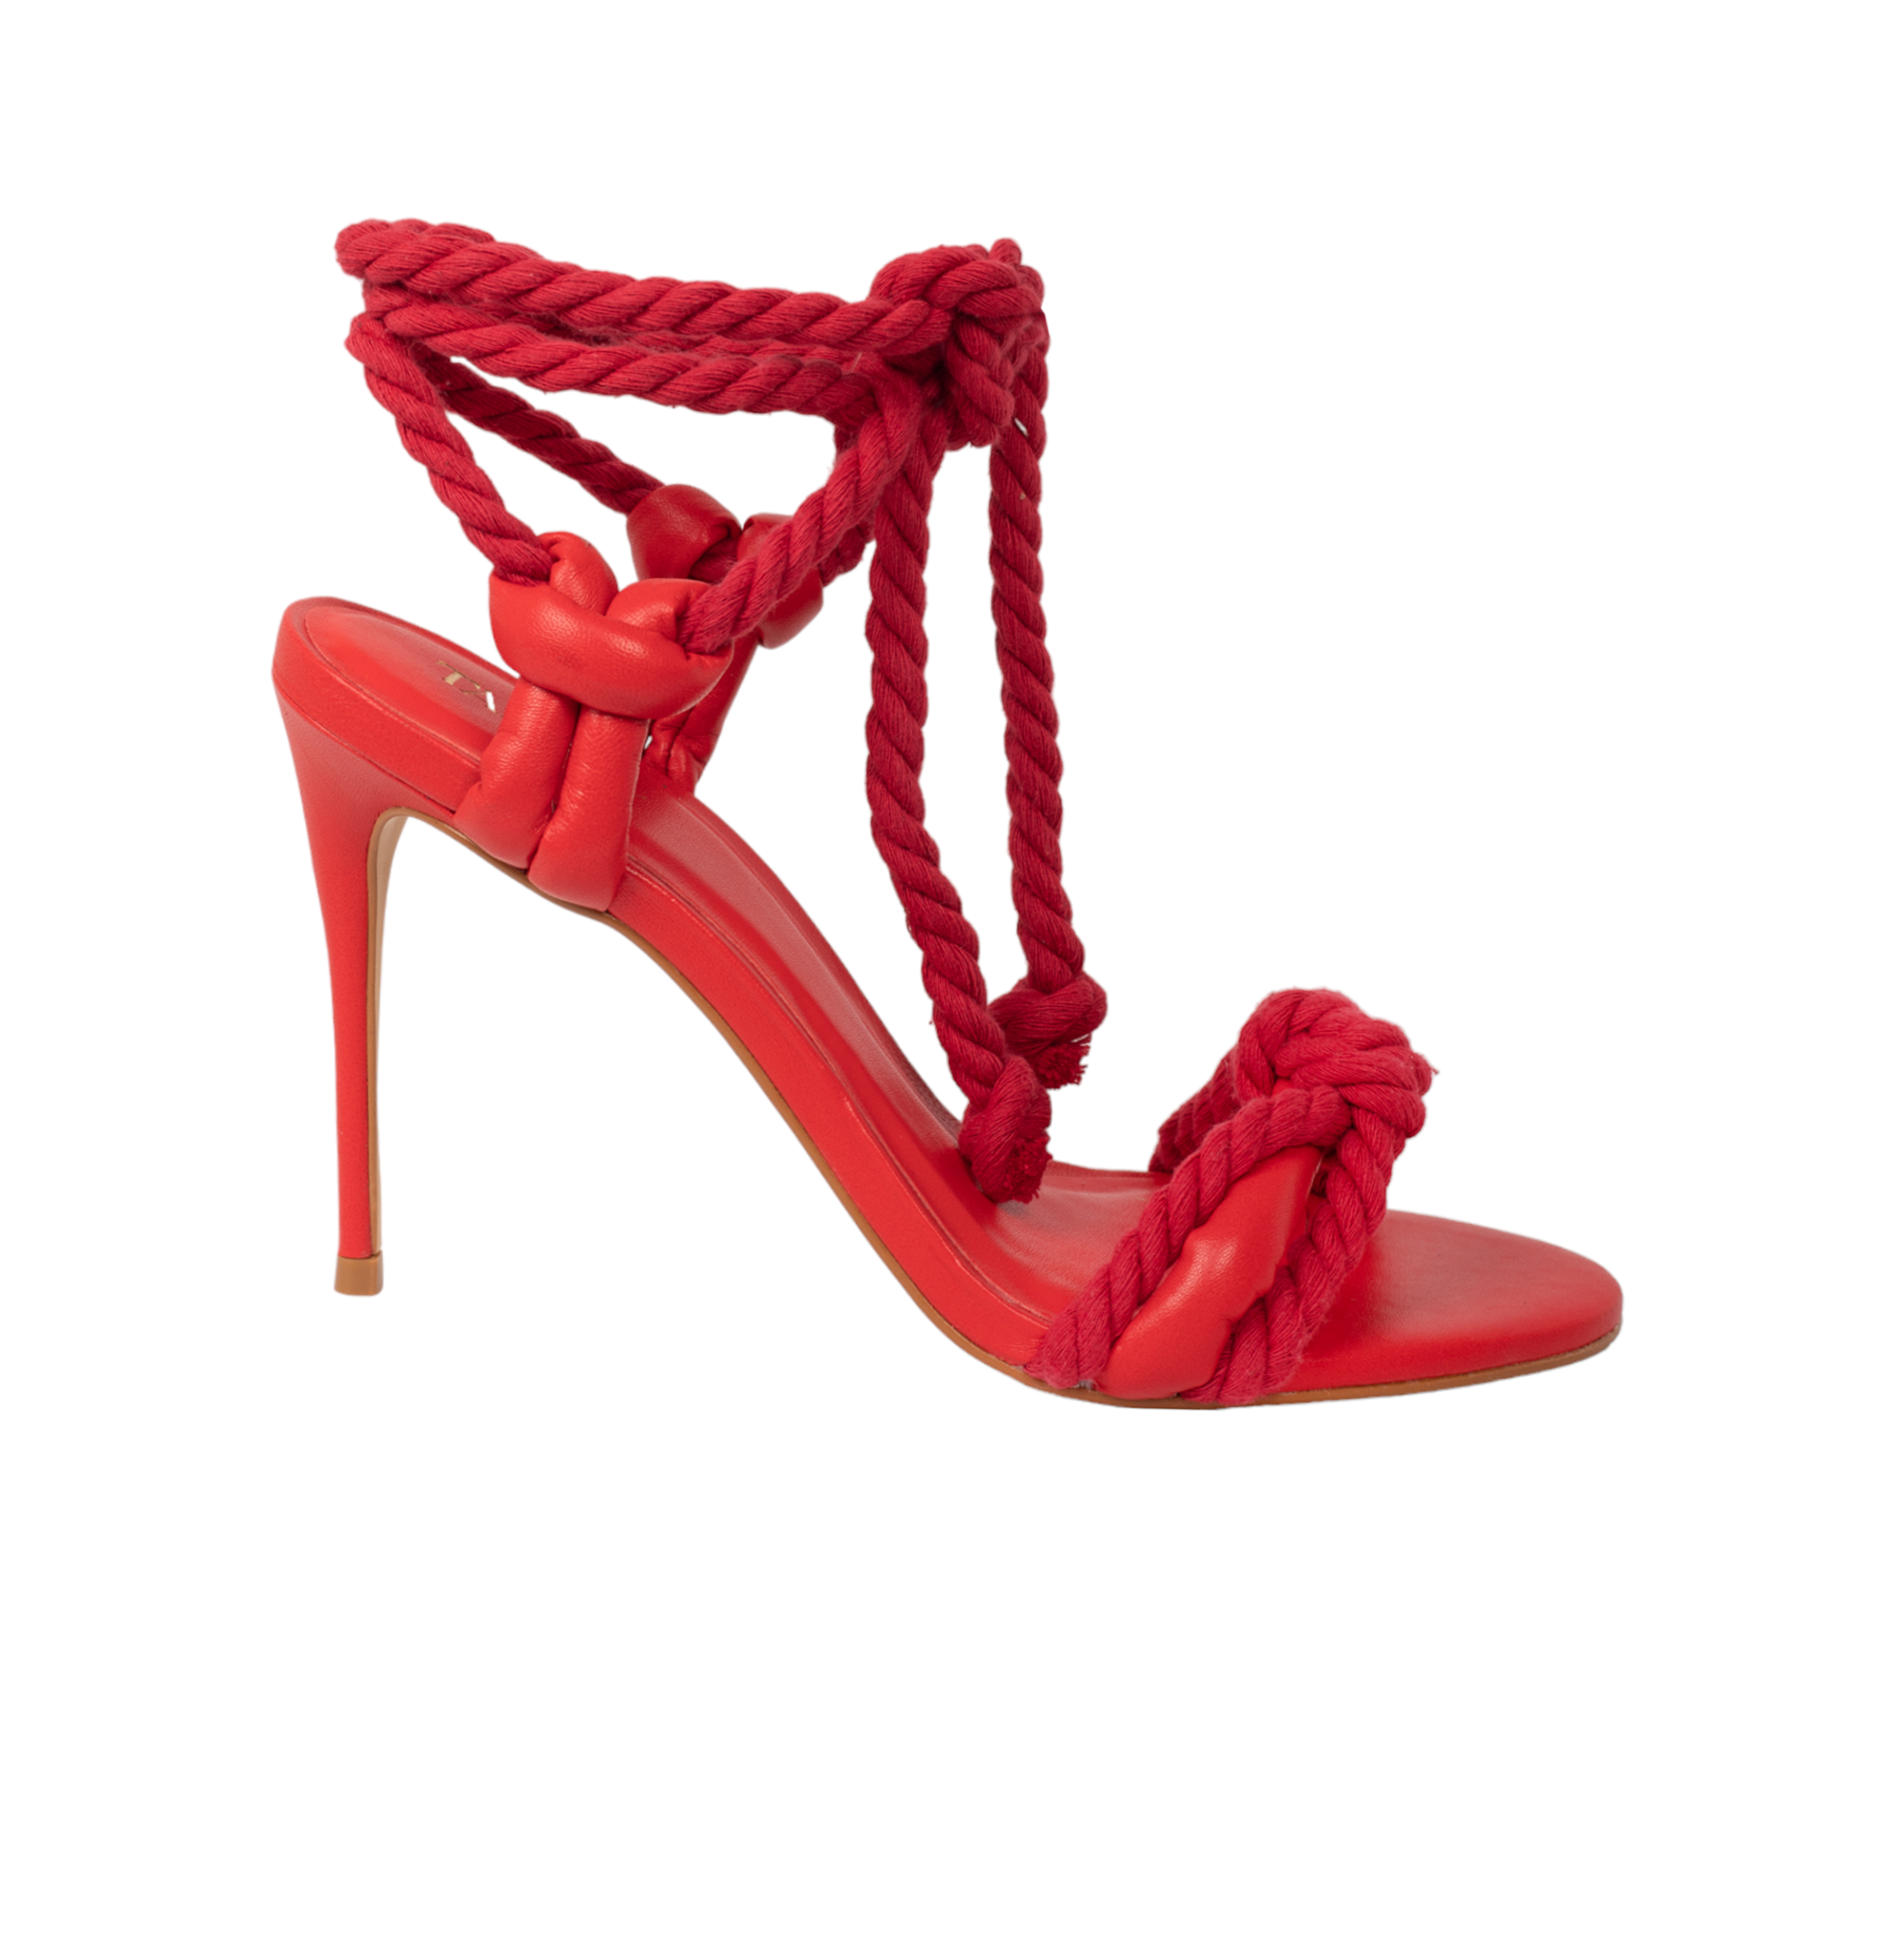 Arenisca High Heel Sandals - Red High Heels TARBAY   